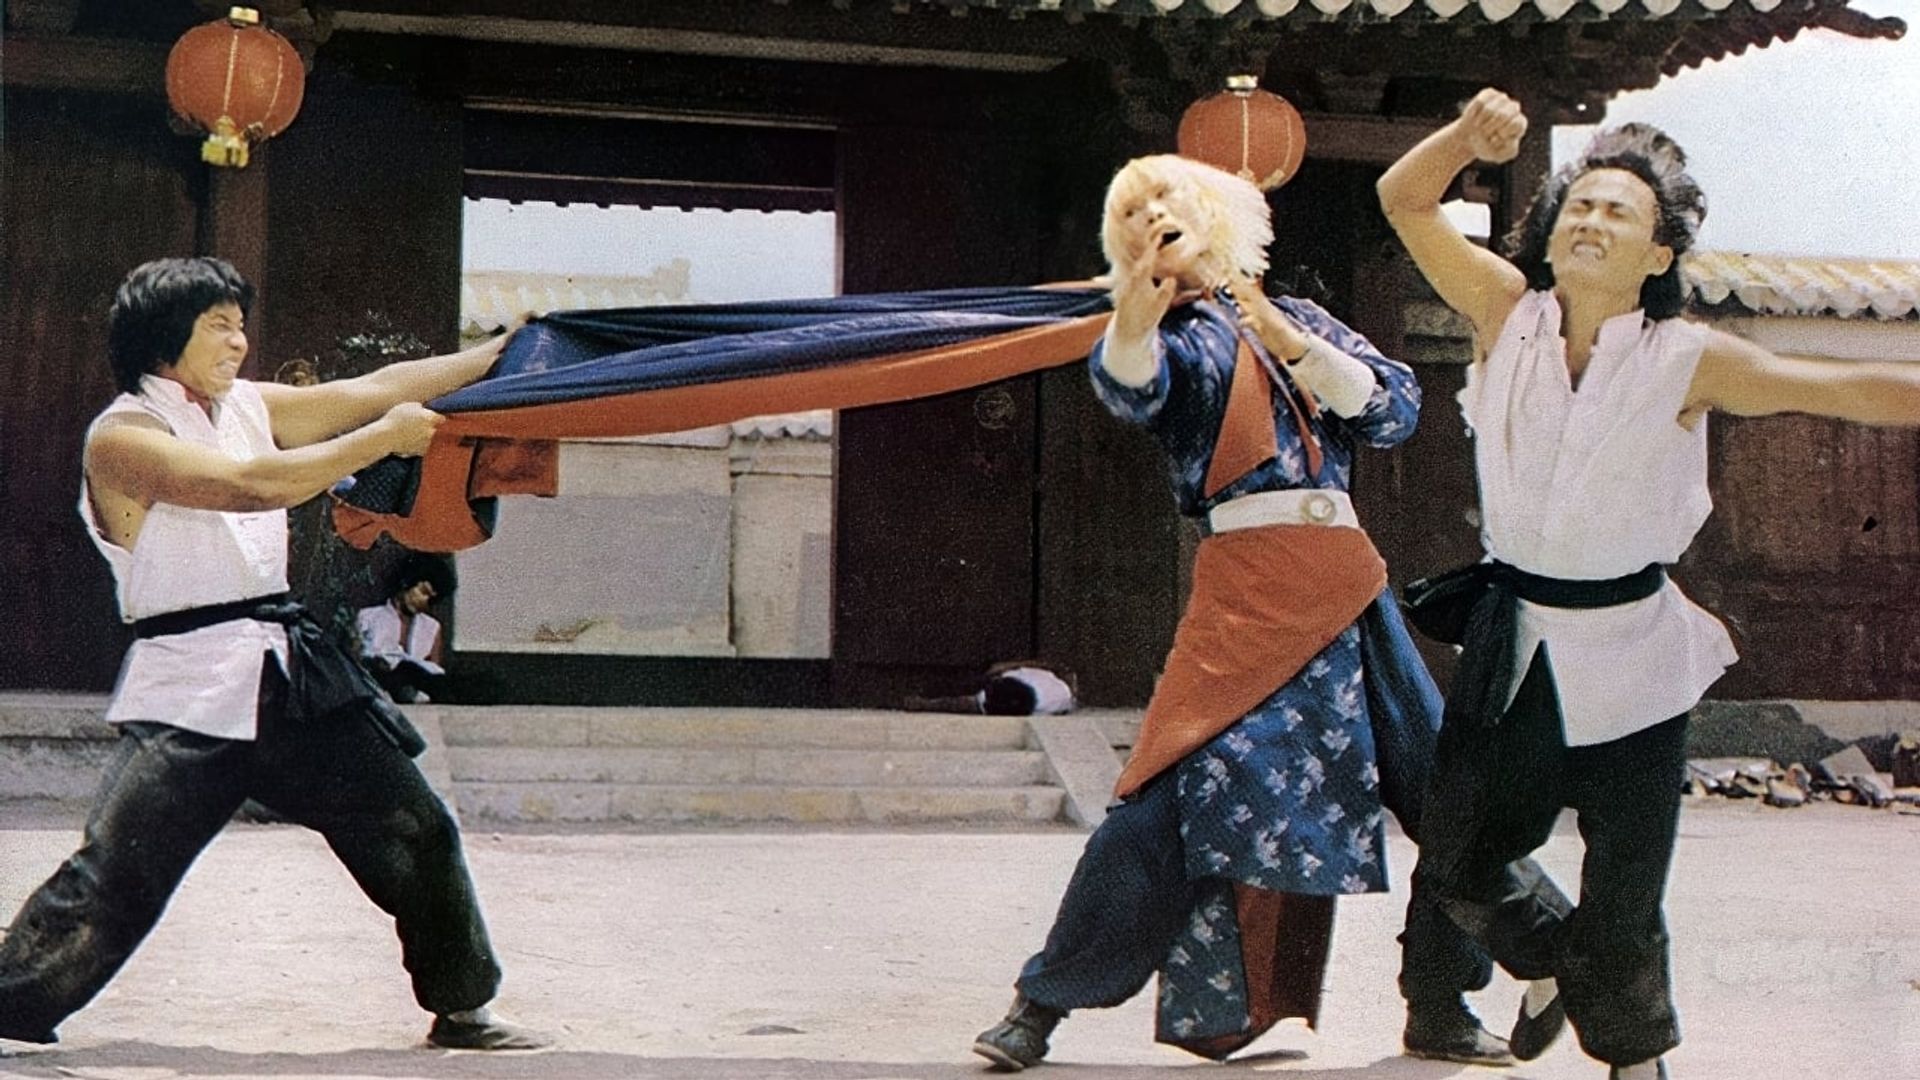 Les mercenaires du Kung-Fu 1979 drive in movie channel